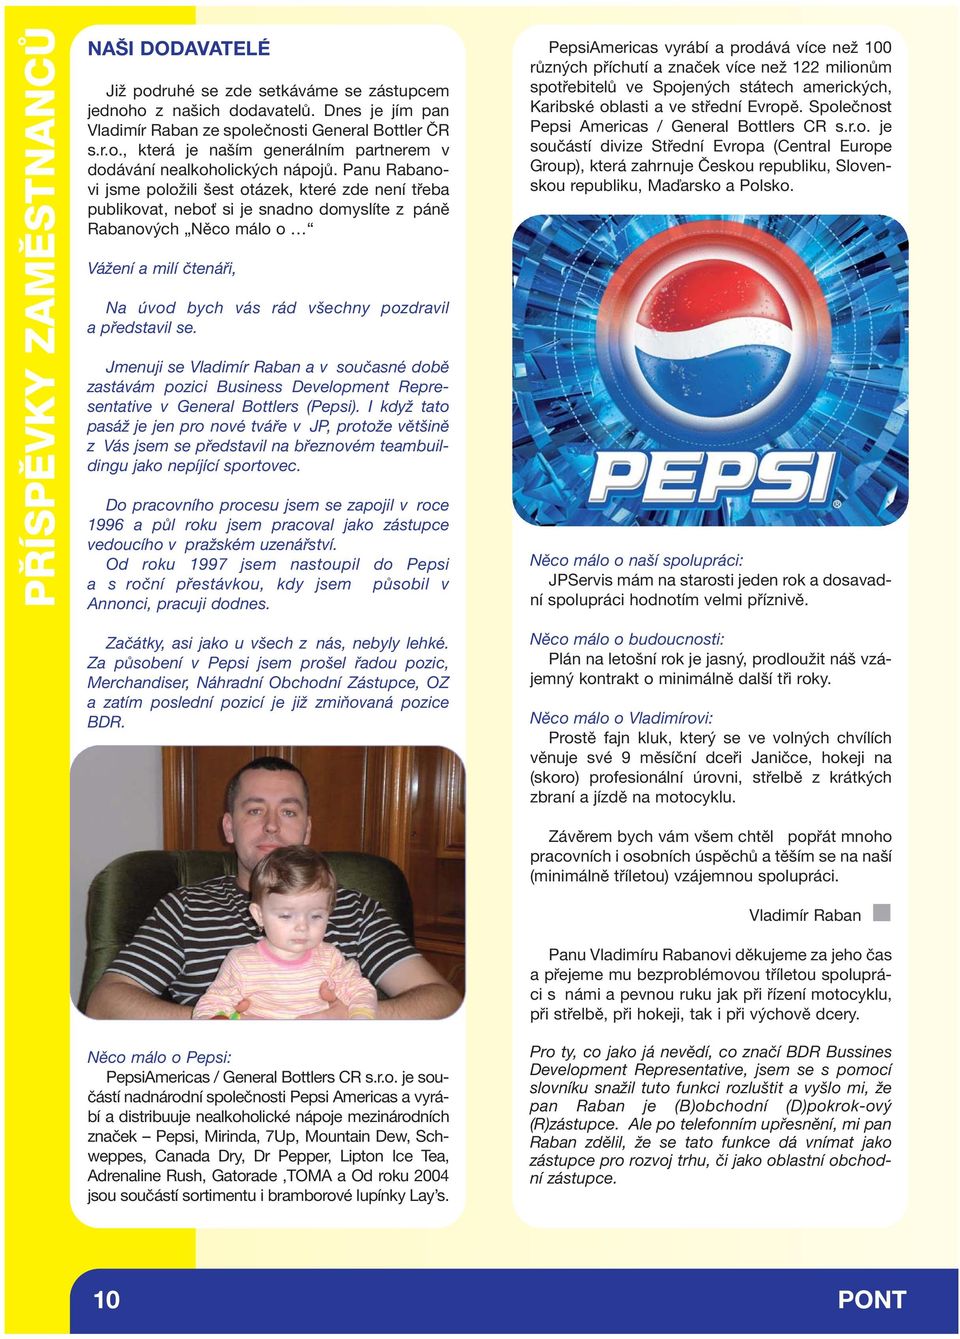 představil se. Jmenuji se Vladimír Raban a v současné době zastávám pozici Business Development Representative v General Bottlers (Pepsi).